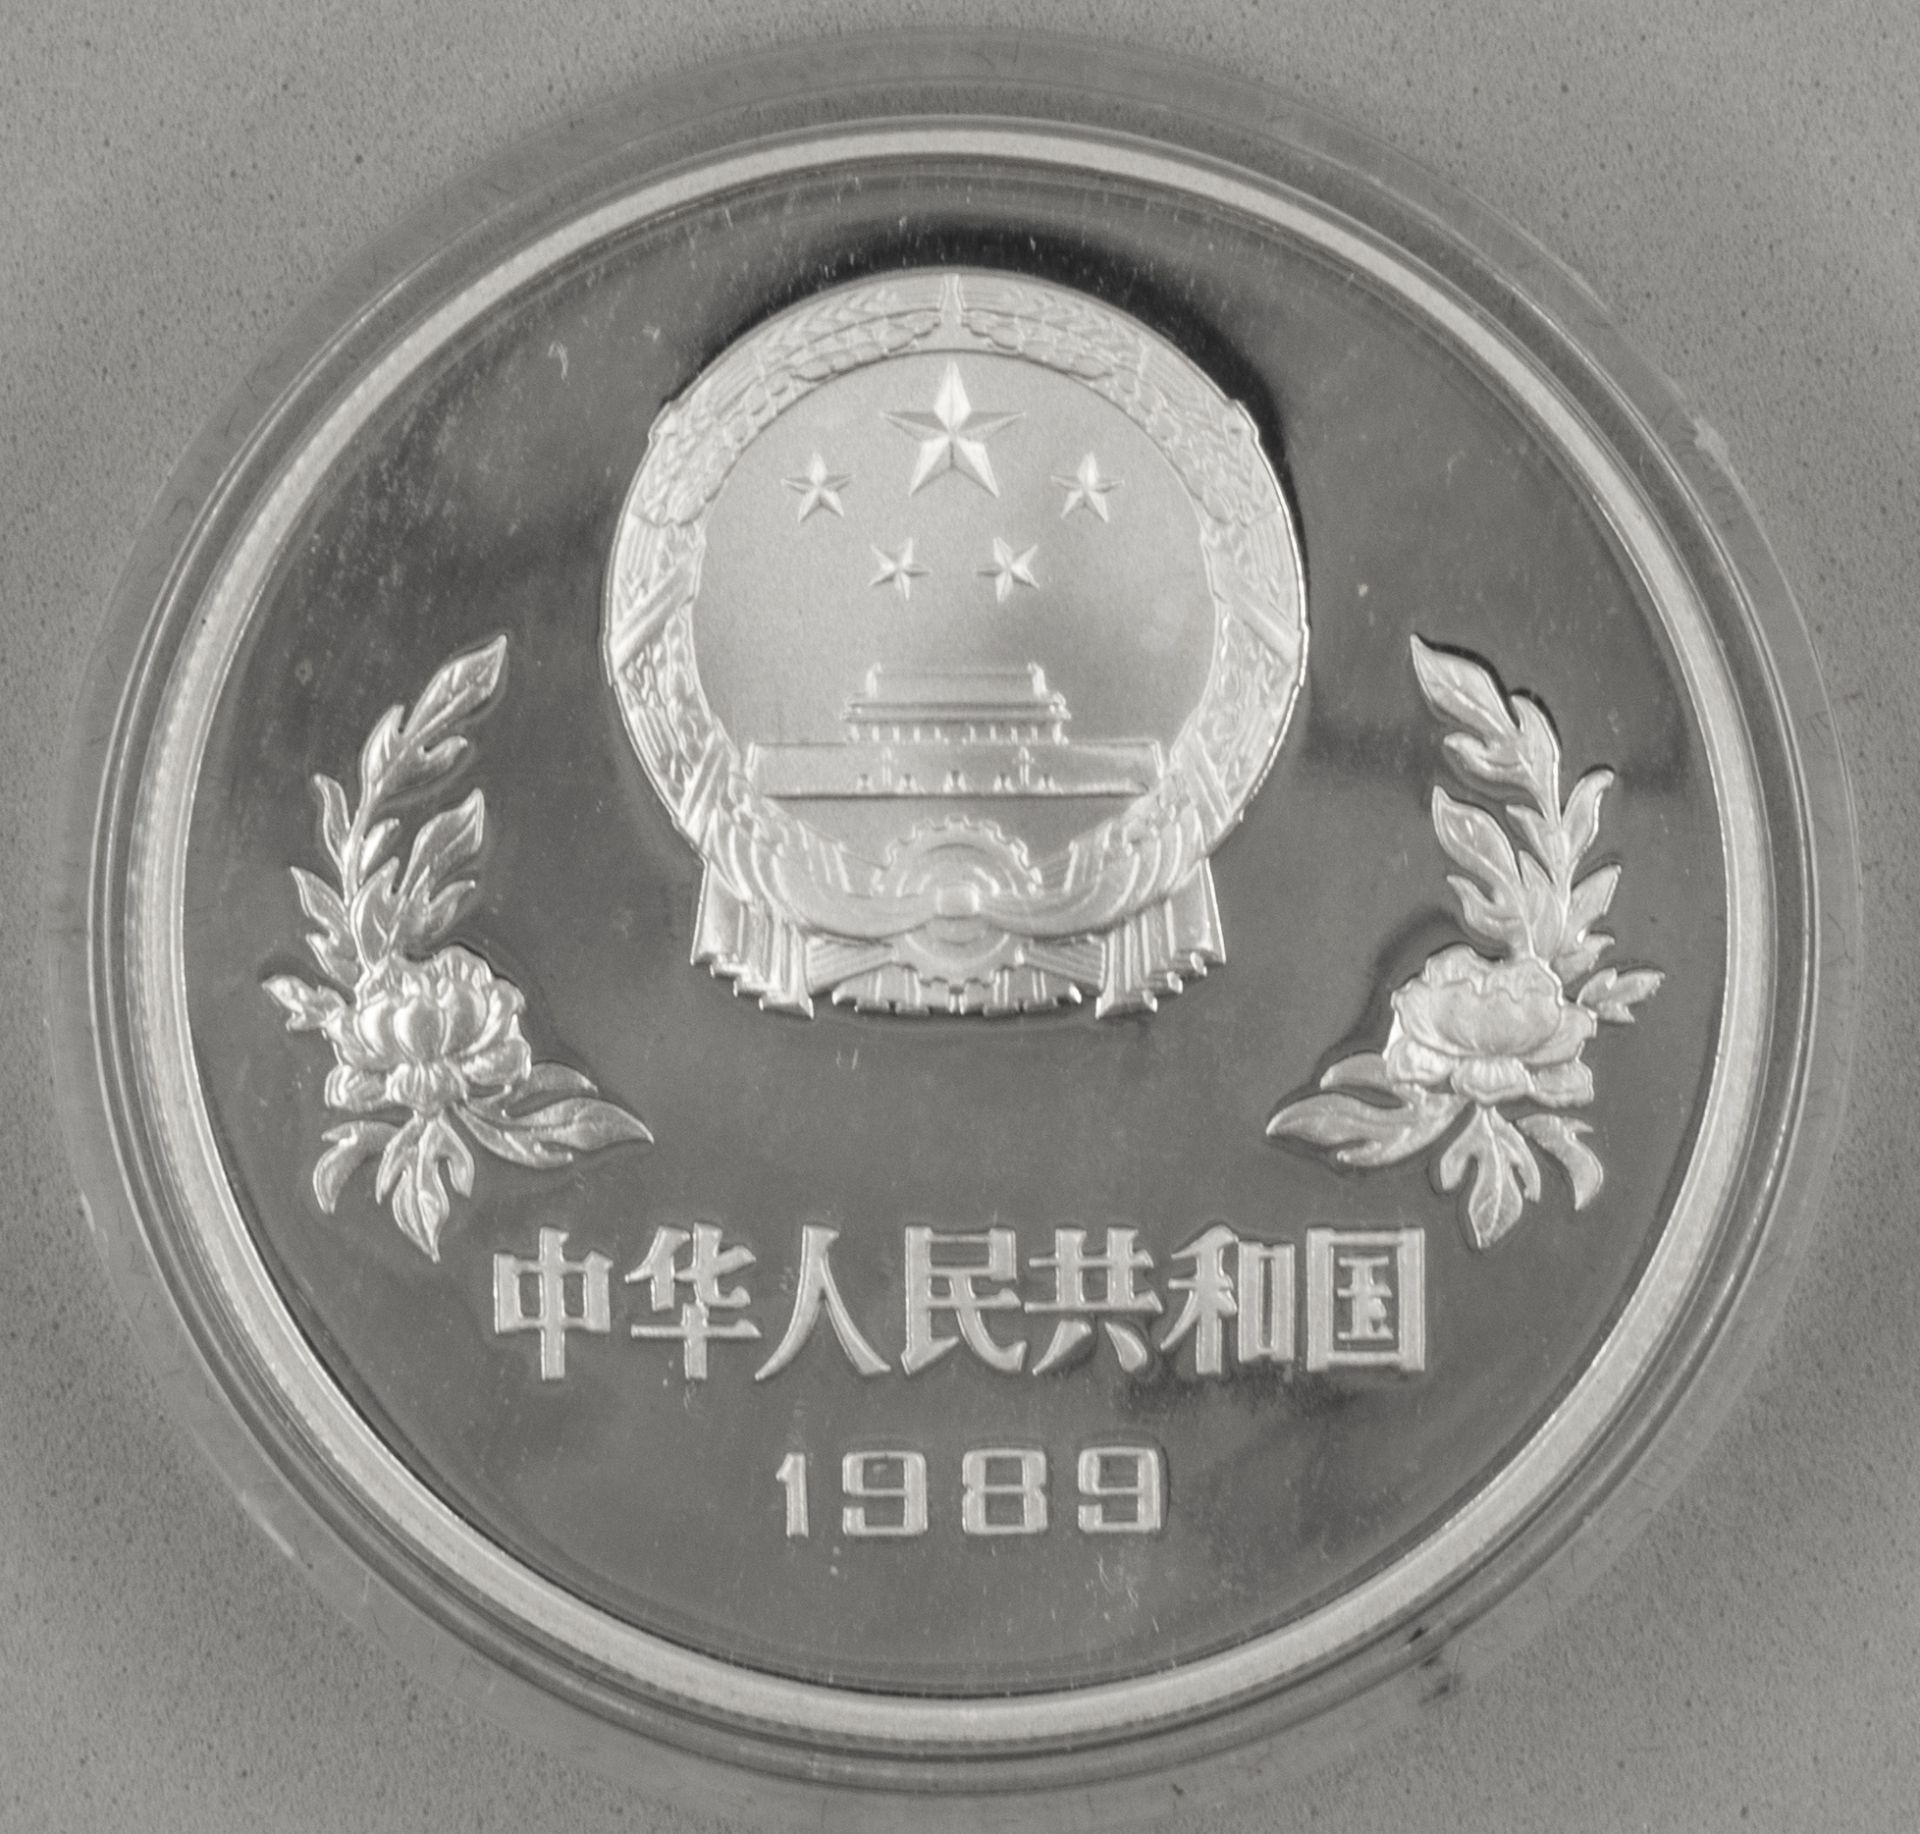 5 Yuan Silbermünze Fußballer, gekapselt. - Bild 2 aus 2